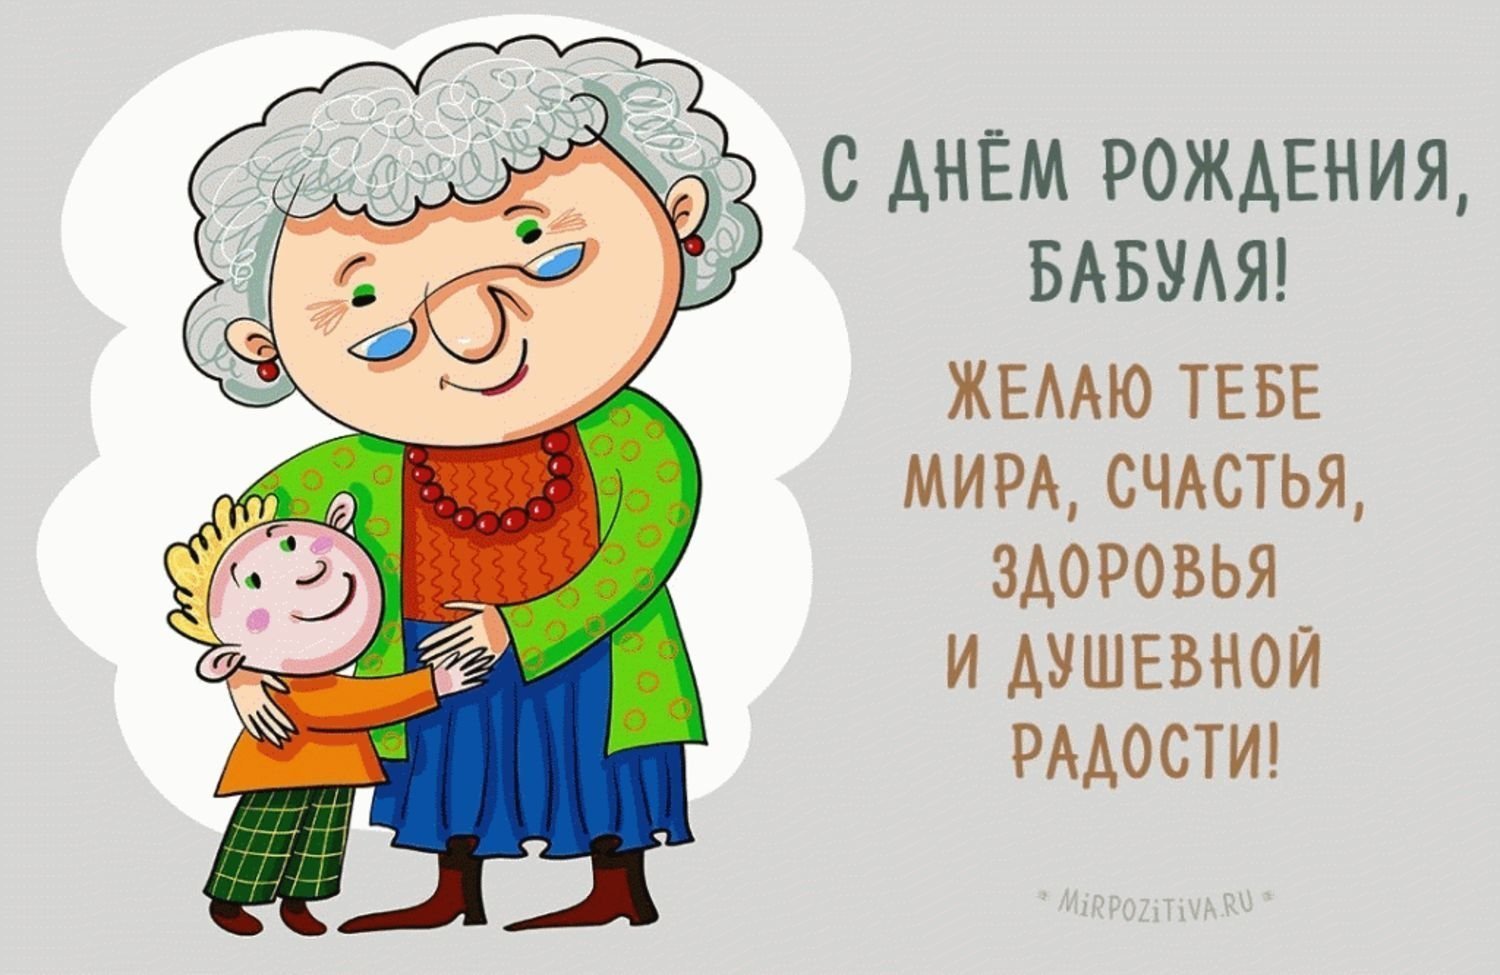 Открытка Бабушке: заказать и купить по цене руб. с доставкой в Ханты-Мансийске